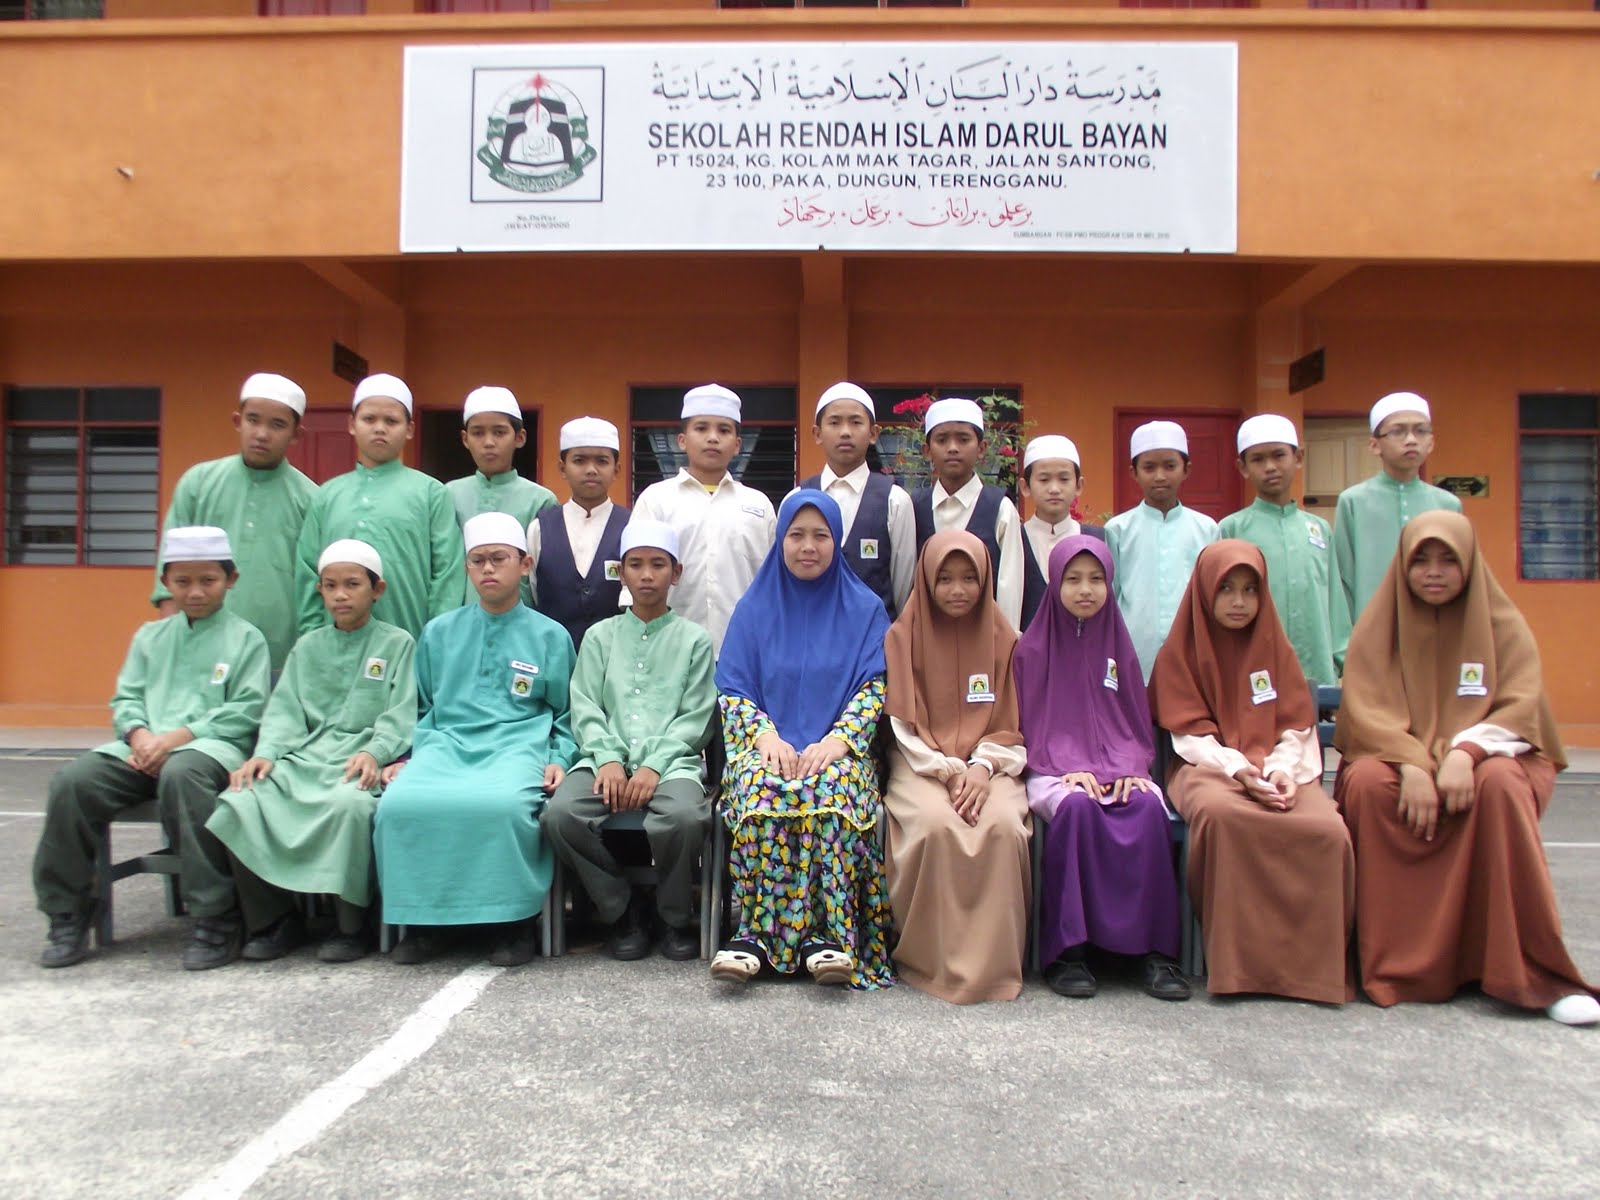 Sekolah Rendah Islam Darul Bayan: SELAMAT MENDUDUKI 